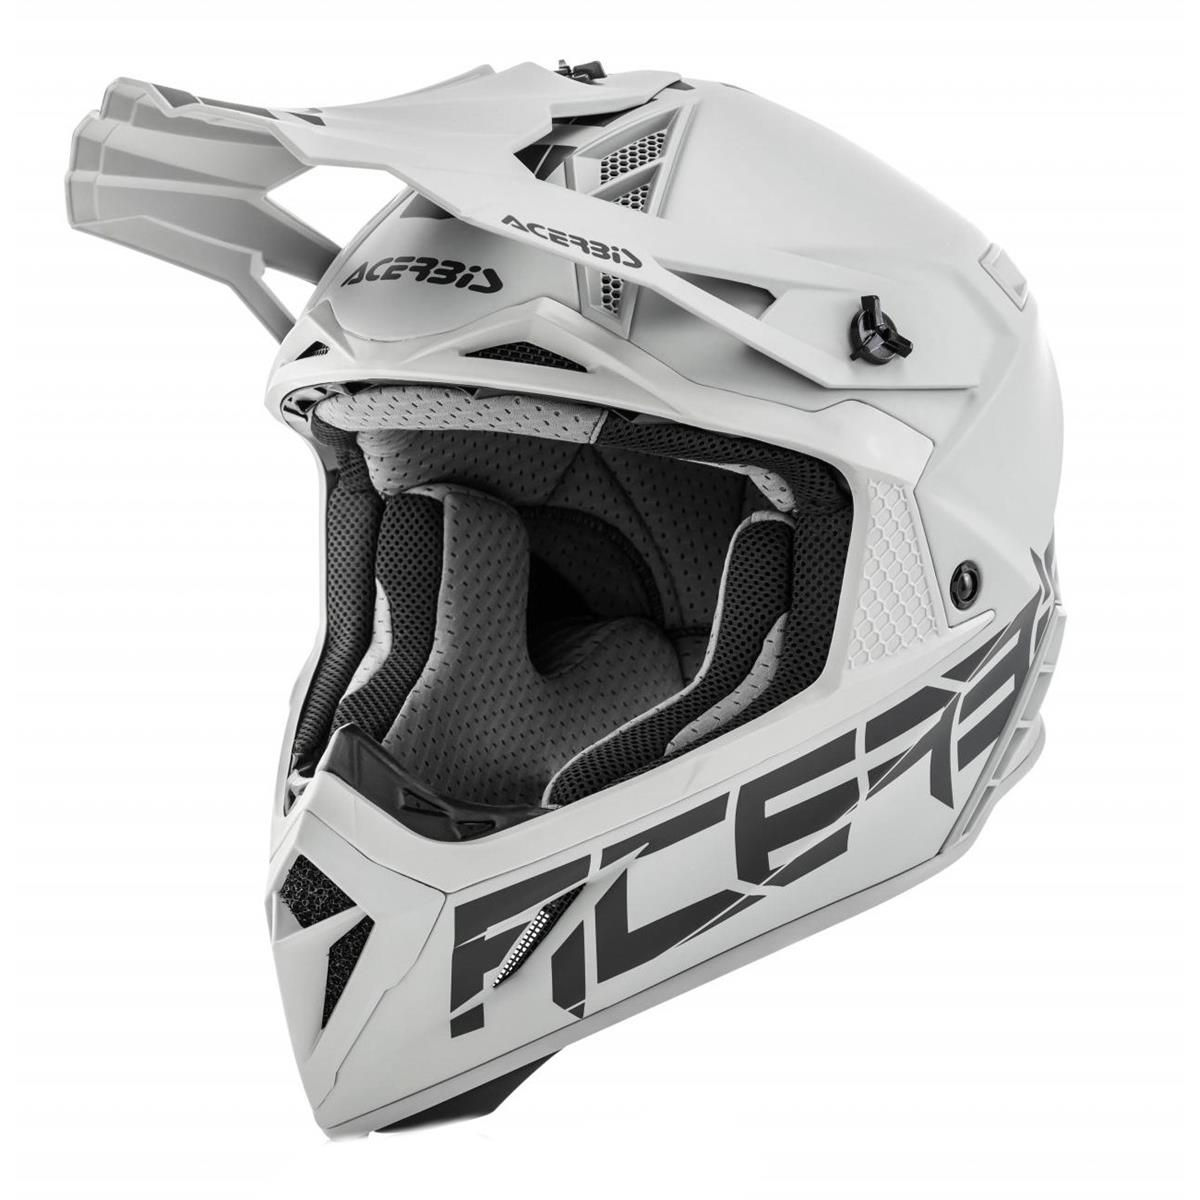 Acerbis Helmet Impact Steel Carbon Grey